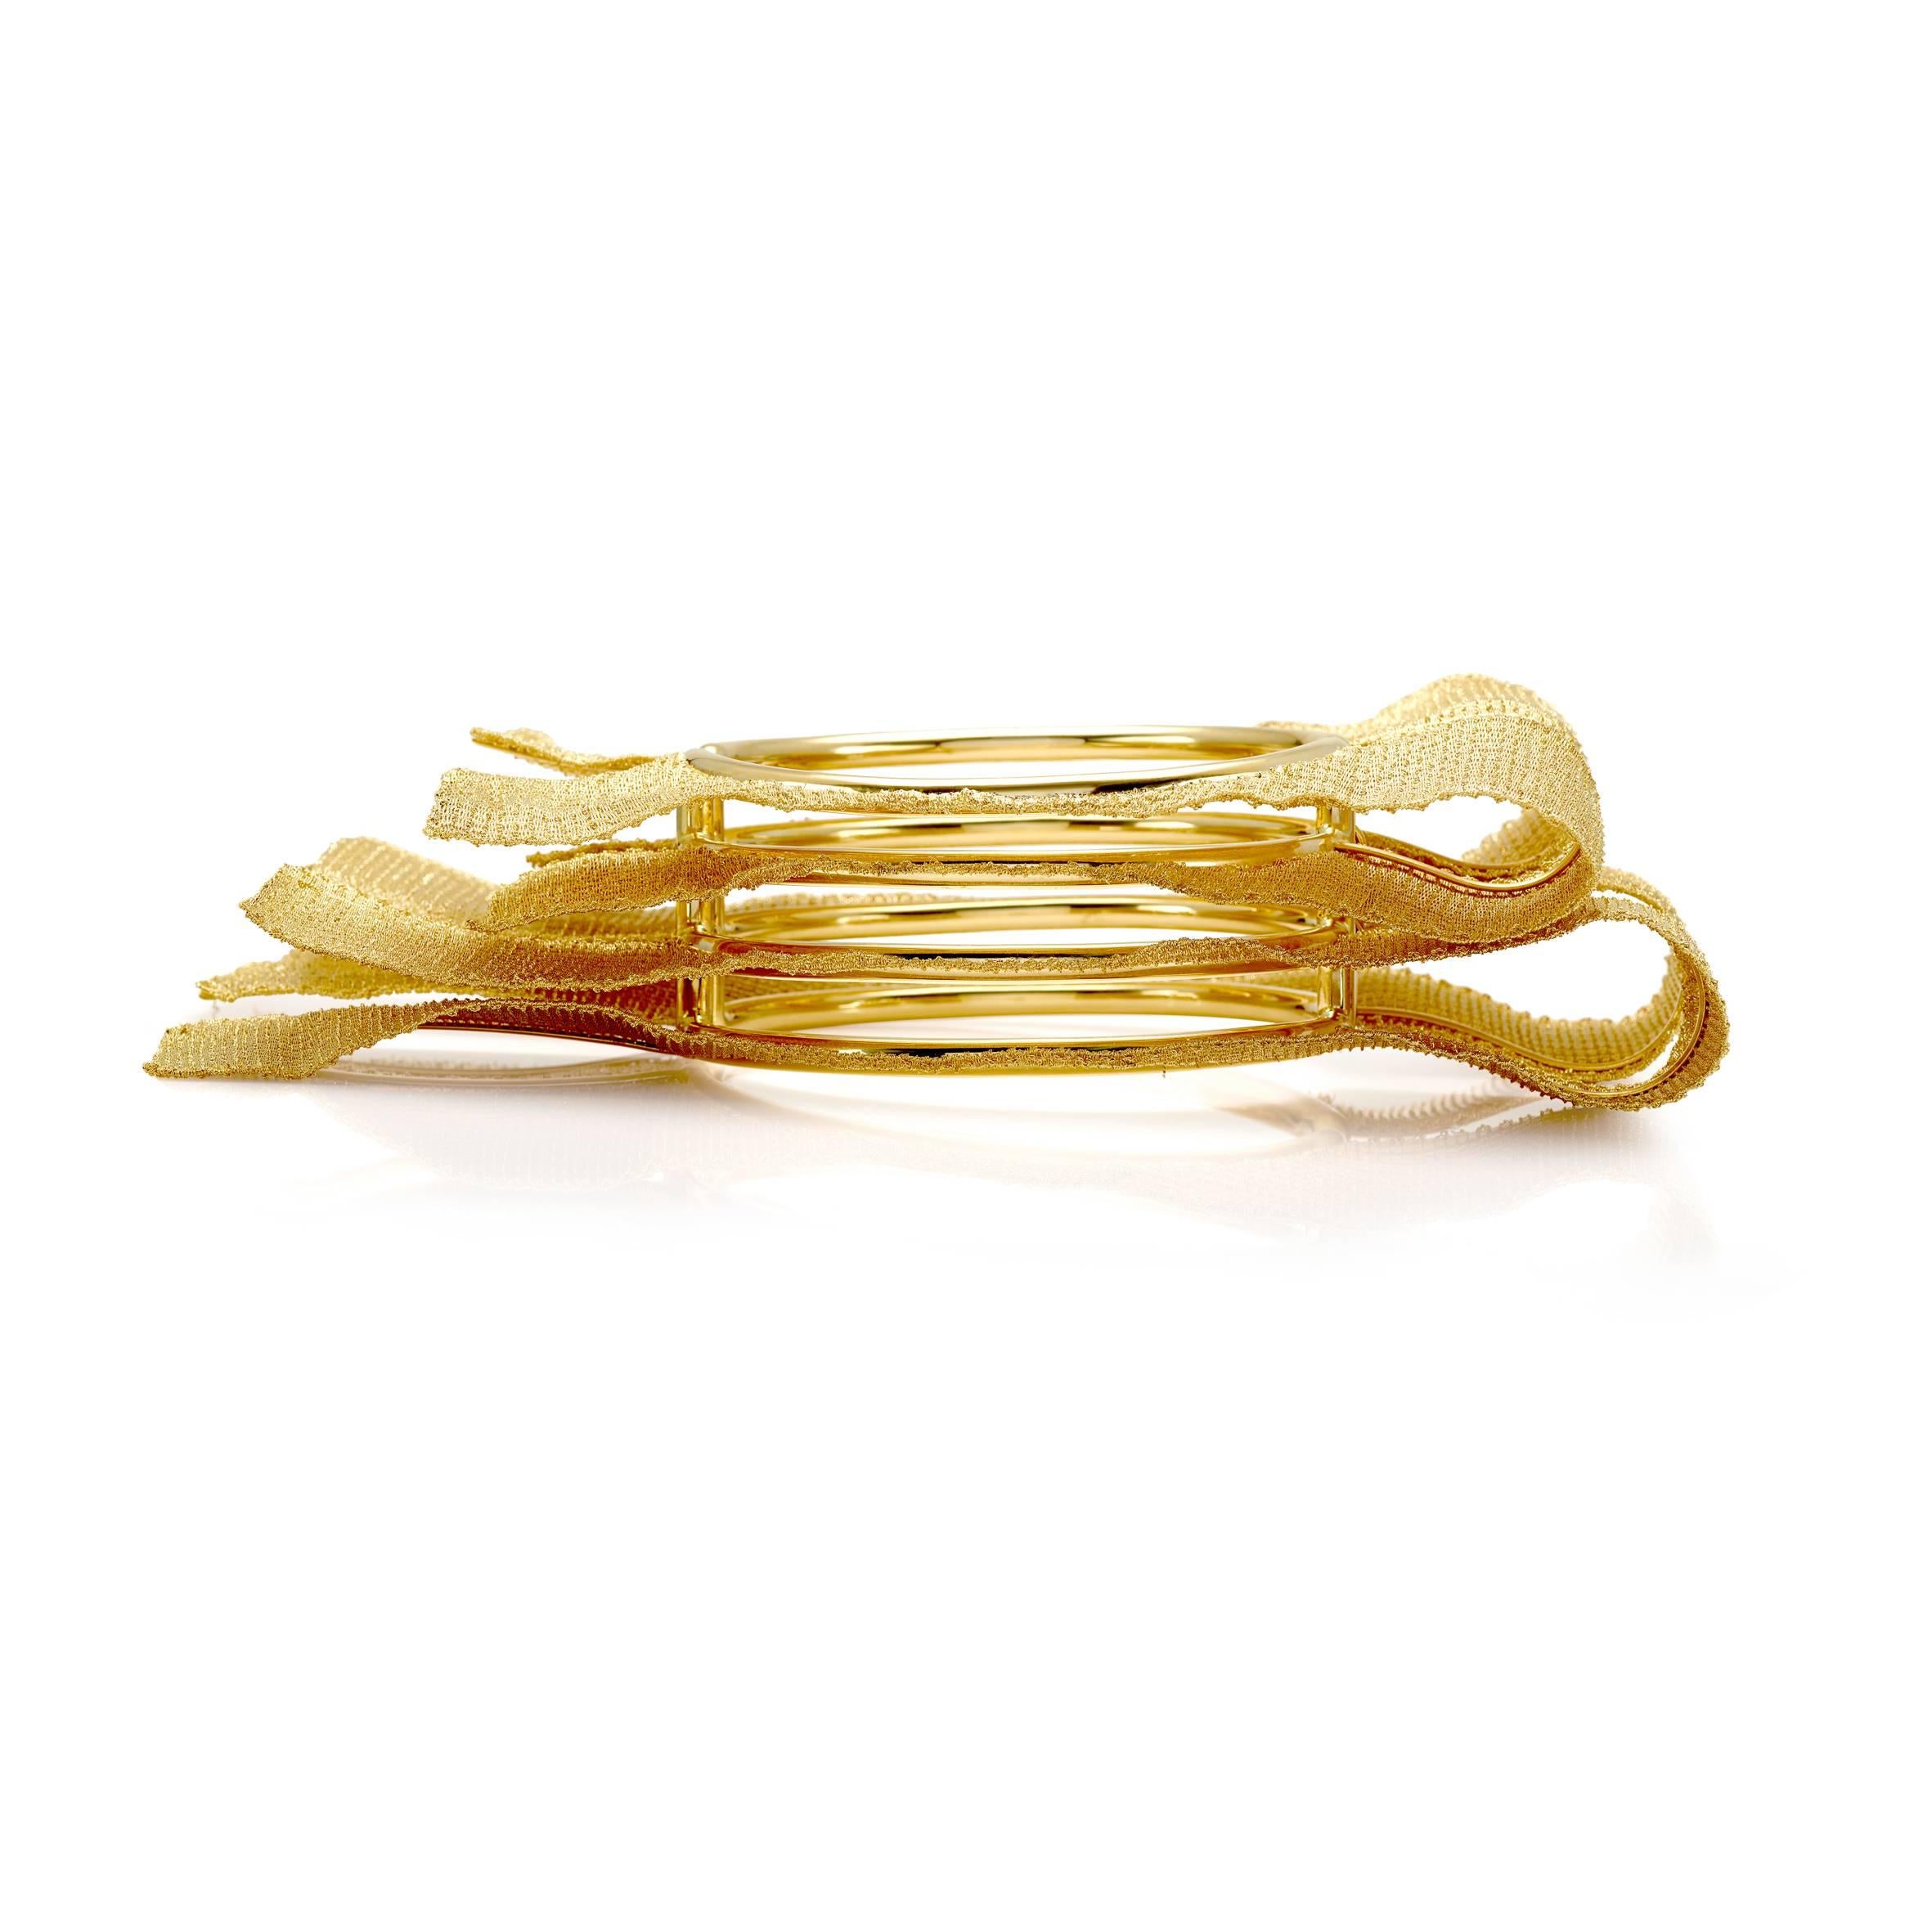 II Finaliste au concours des bijoux de l'Oscar
Ce bracelet a été spécialement conçu pour le concours.
bracelet en or jaune 18K 
Poids total de l'or gr 197,90
Tampon MICHELETTO 10MI 750

Ce bracelet peut être associé à la bague 4768-H et au collier